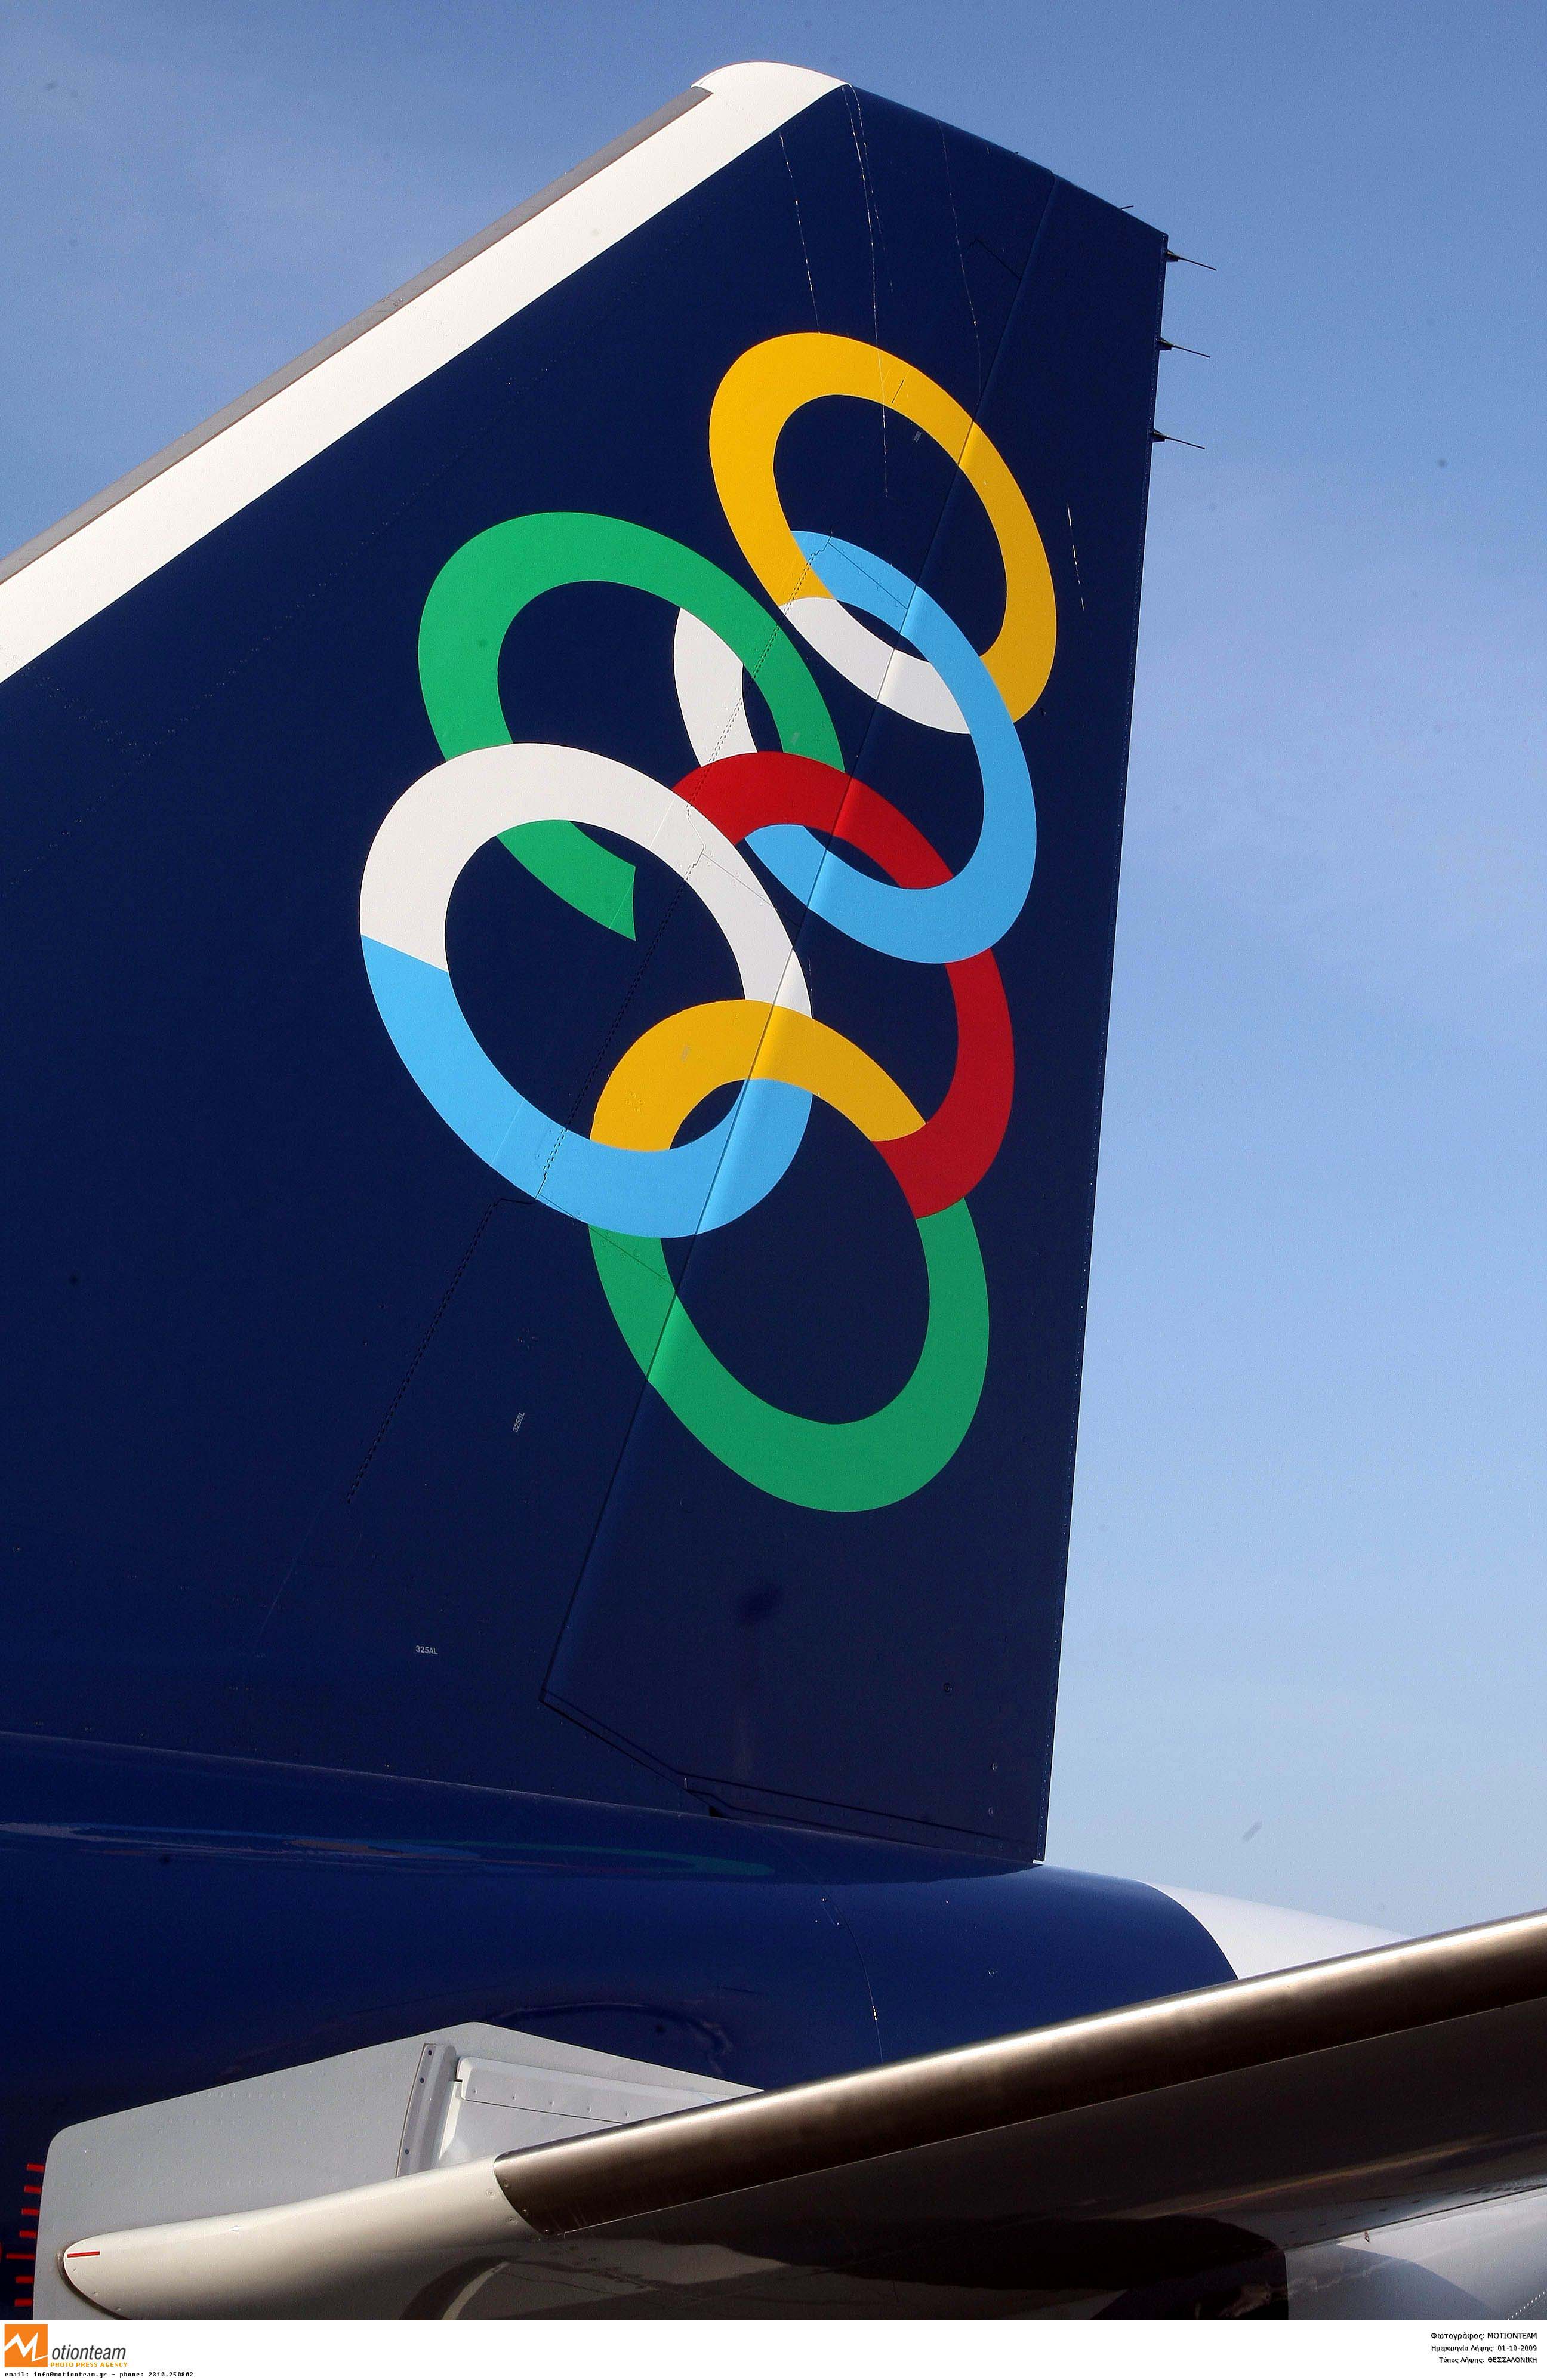 Καθηλωμένα τα αεροπλάνα της Olympic Air